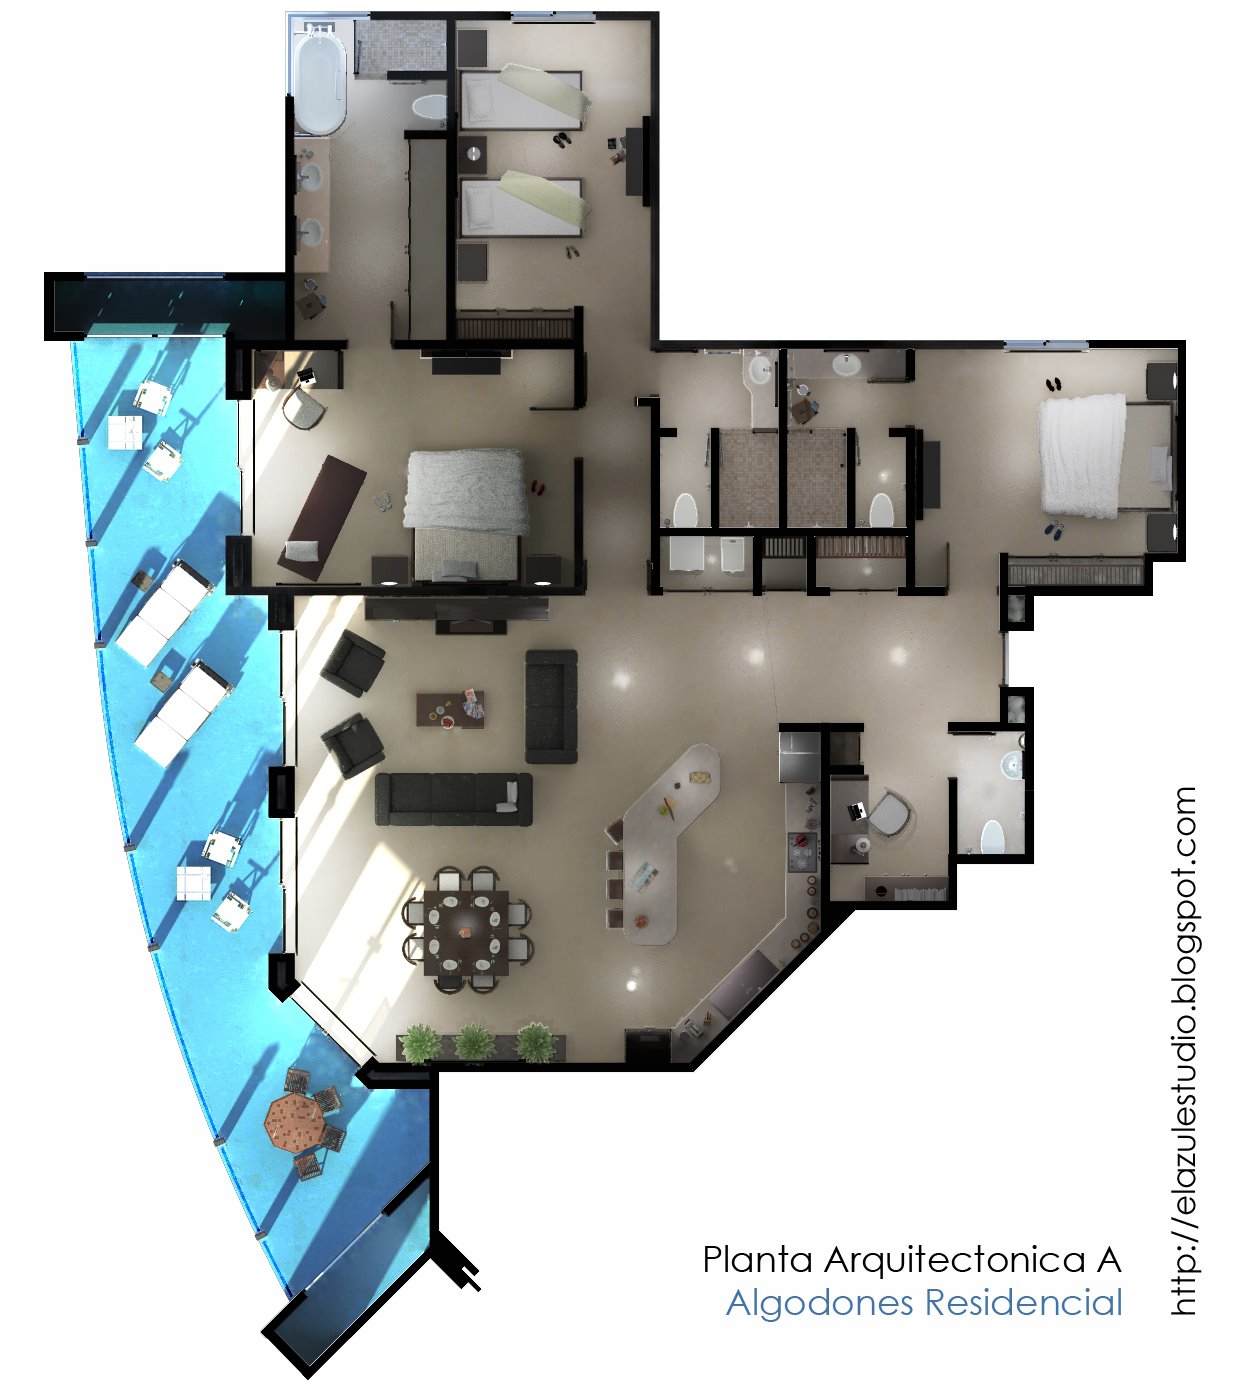 [el+azul+Planta+Arquitectonica+A+-+Algodones+Residencial.jpg]